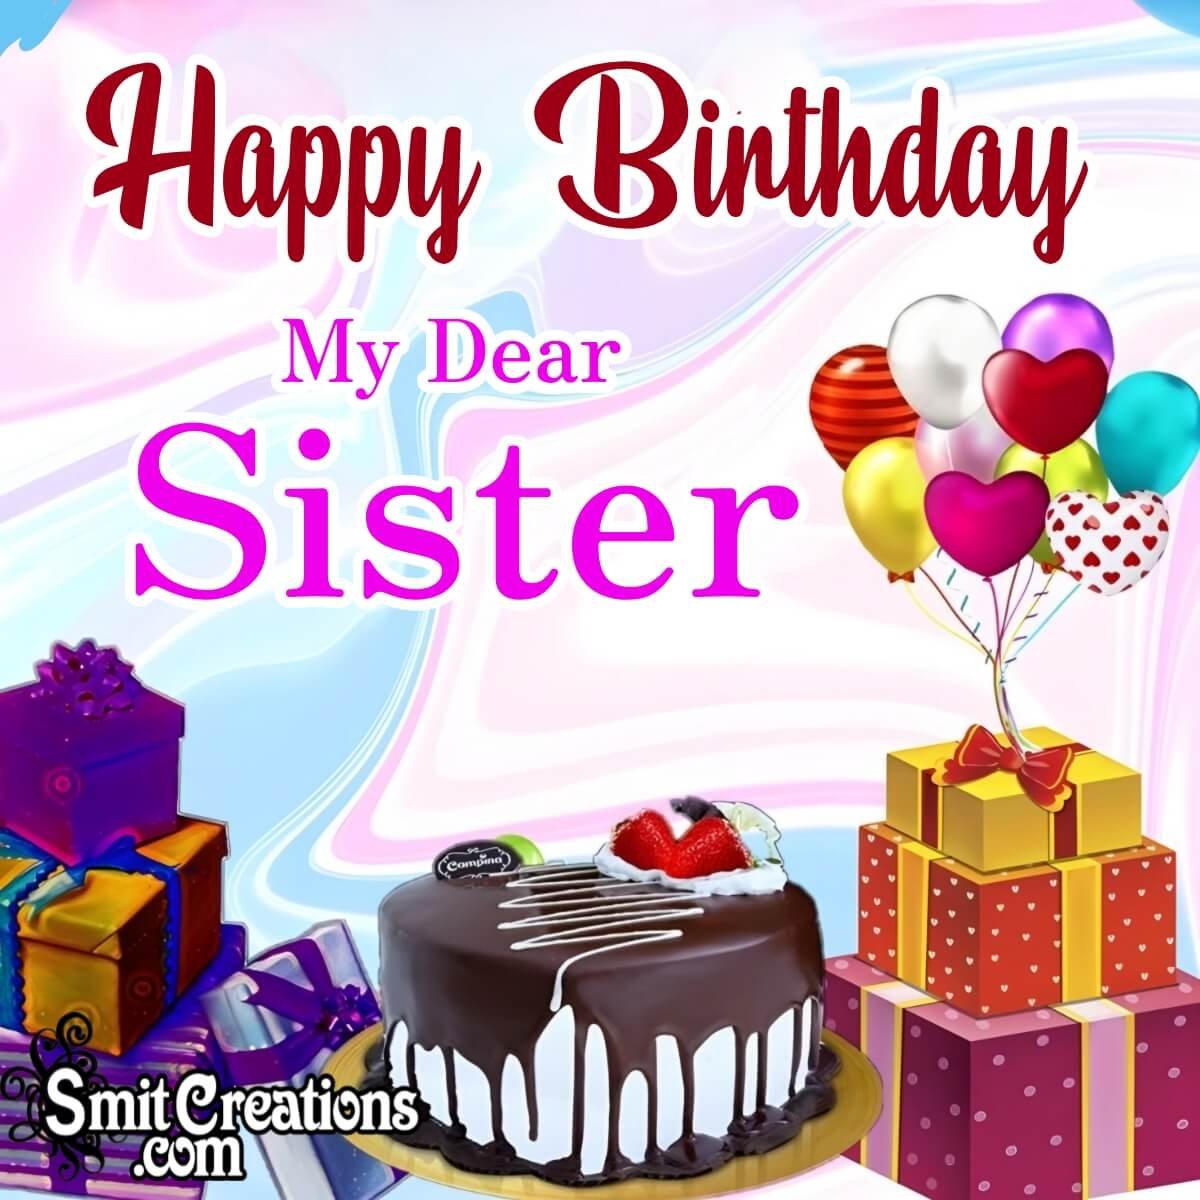 Happy Birthday My Dear Sister